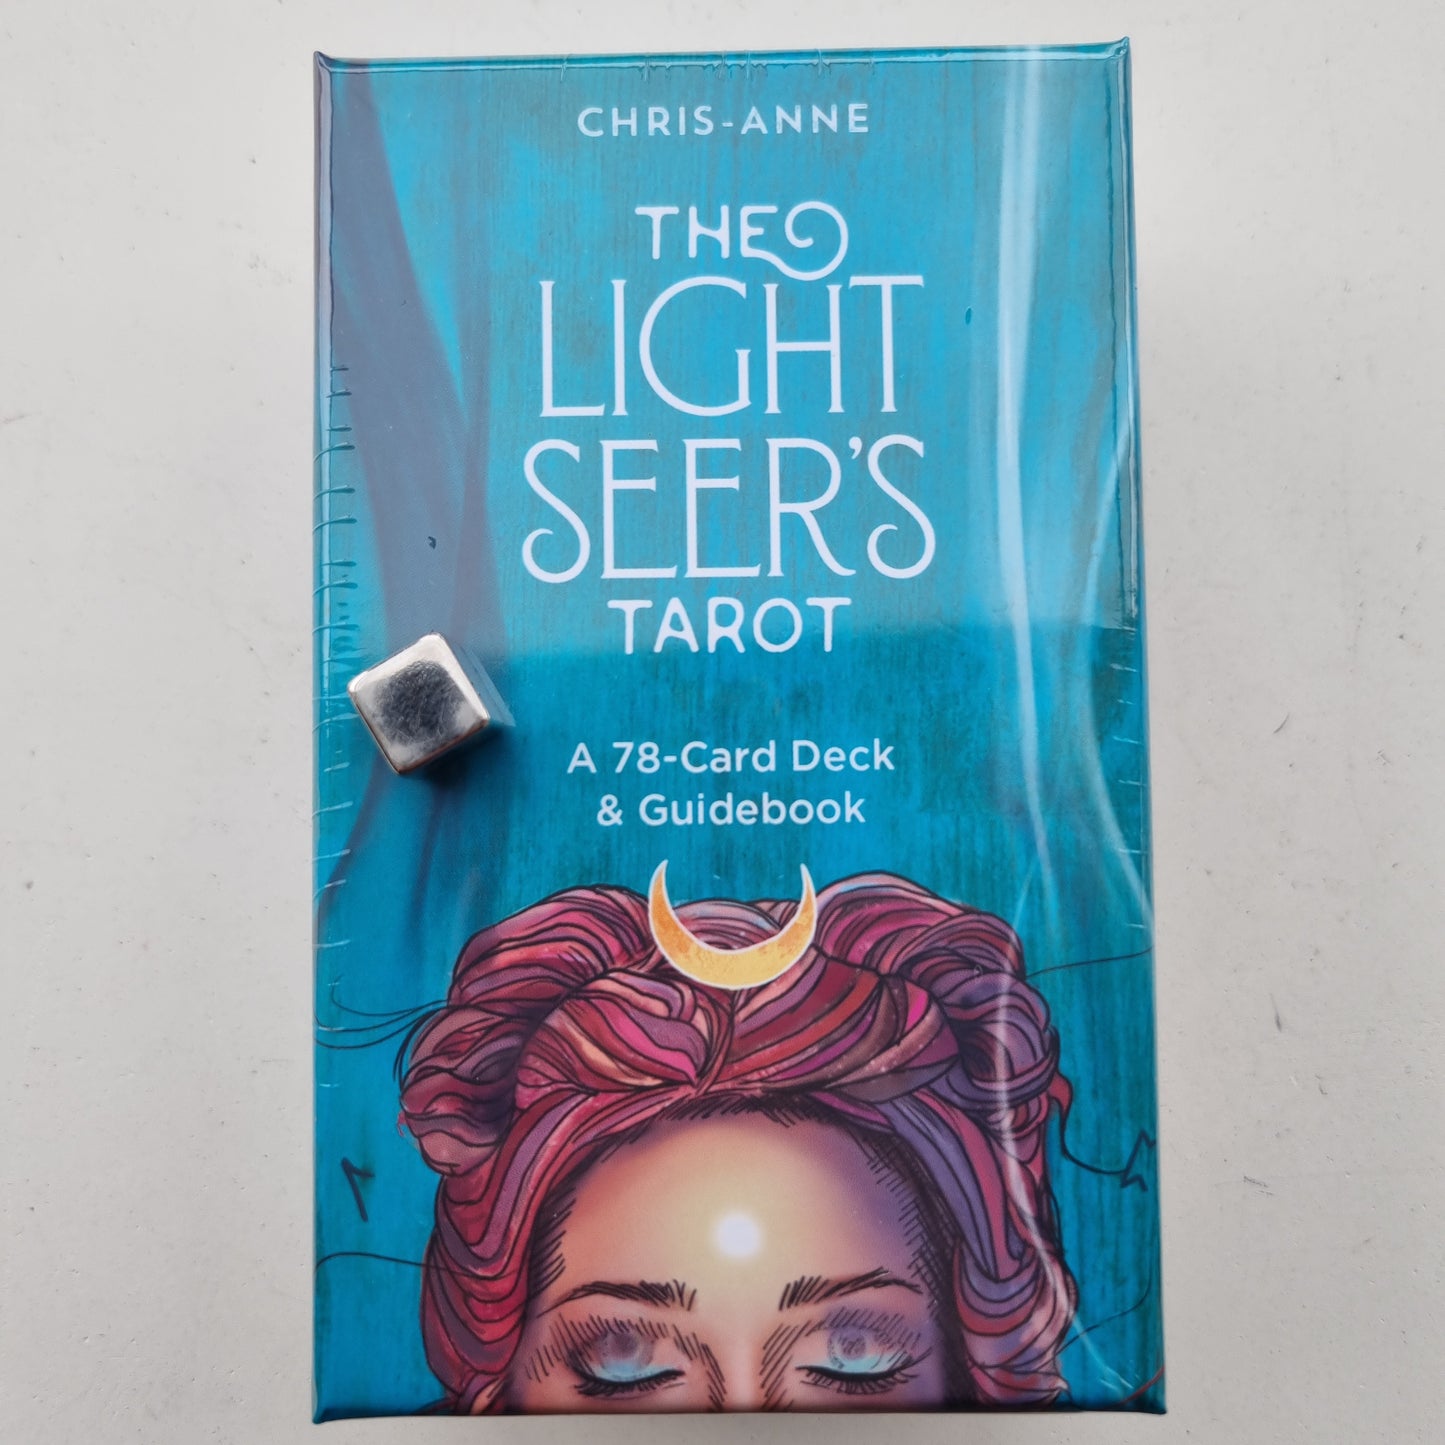 The Light Seer's - Tarot